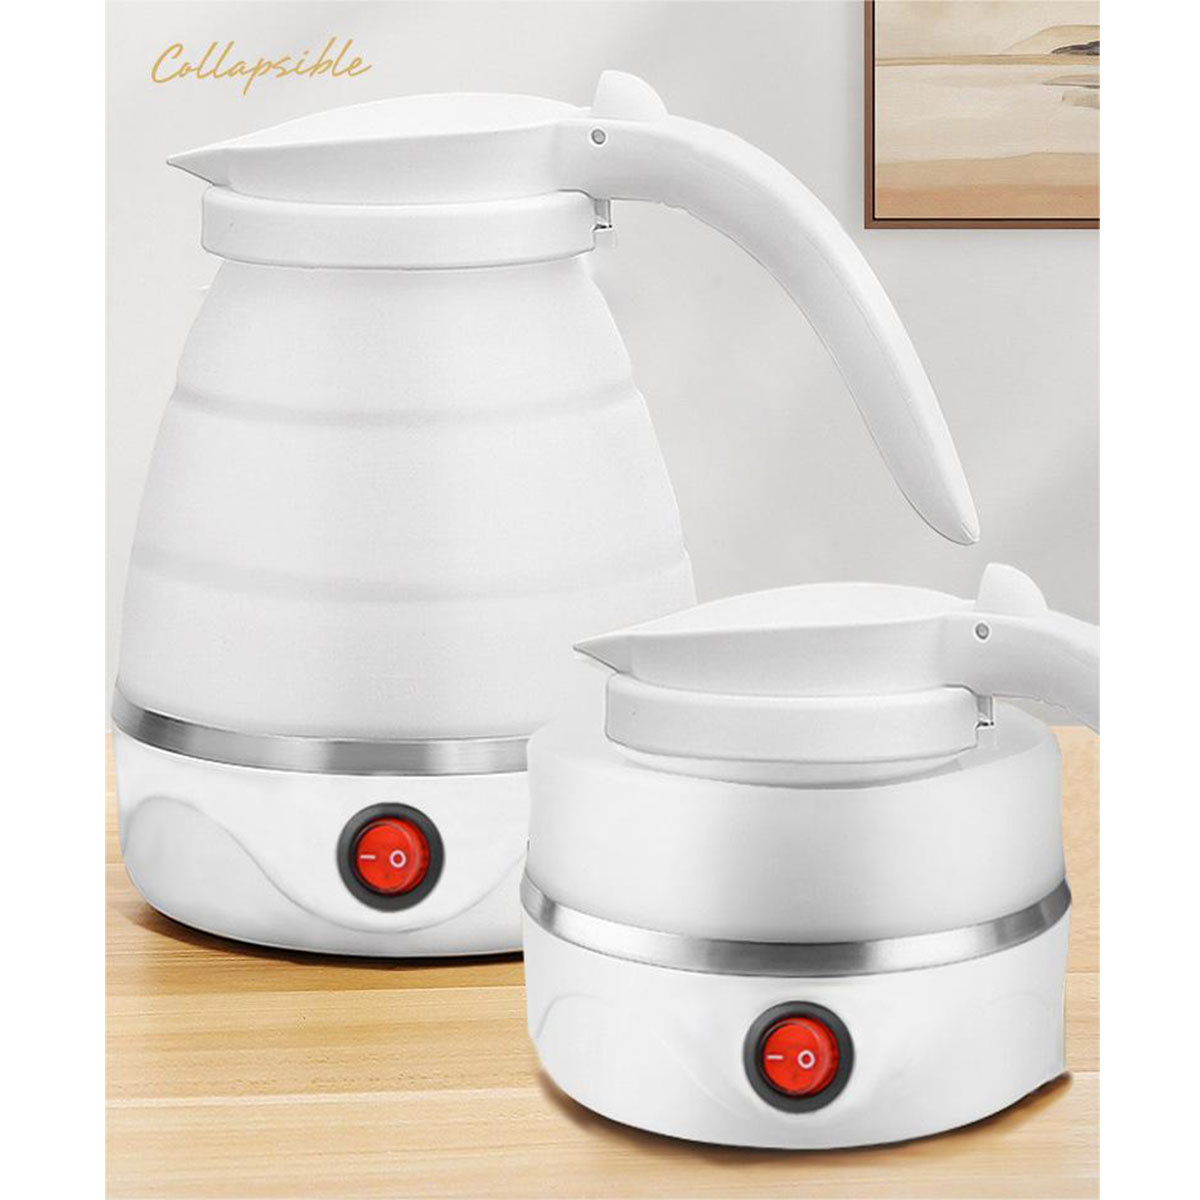 304 Zusammenklappbarer Elektrischer Mini-Wasserkocher Wasserkocher Wasserkocher FEI Weiß Wasserkocher, Weiß Edelstahl